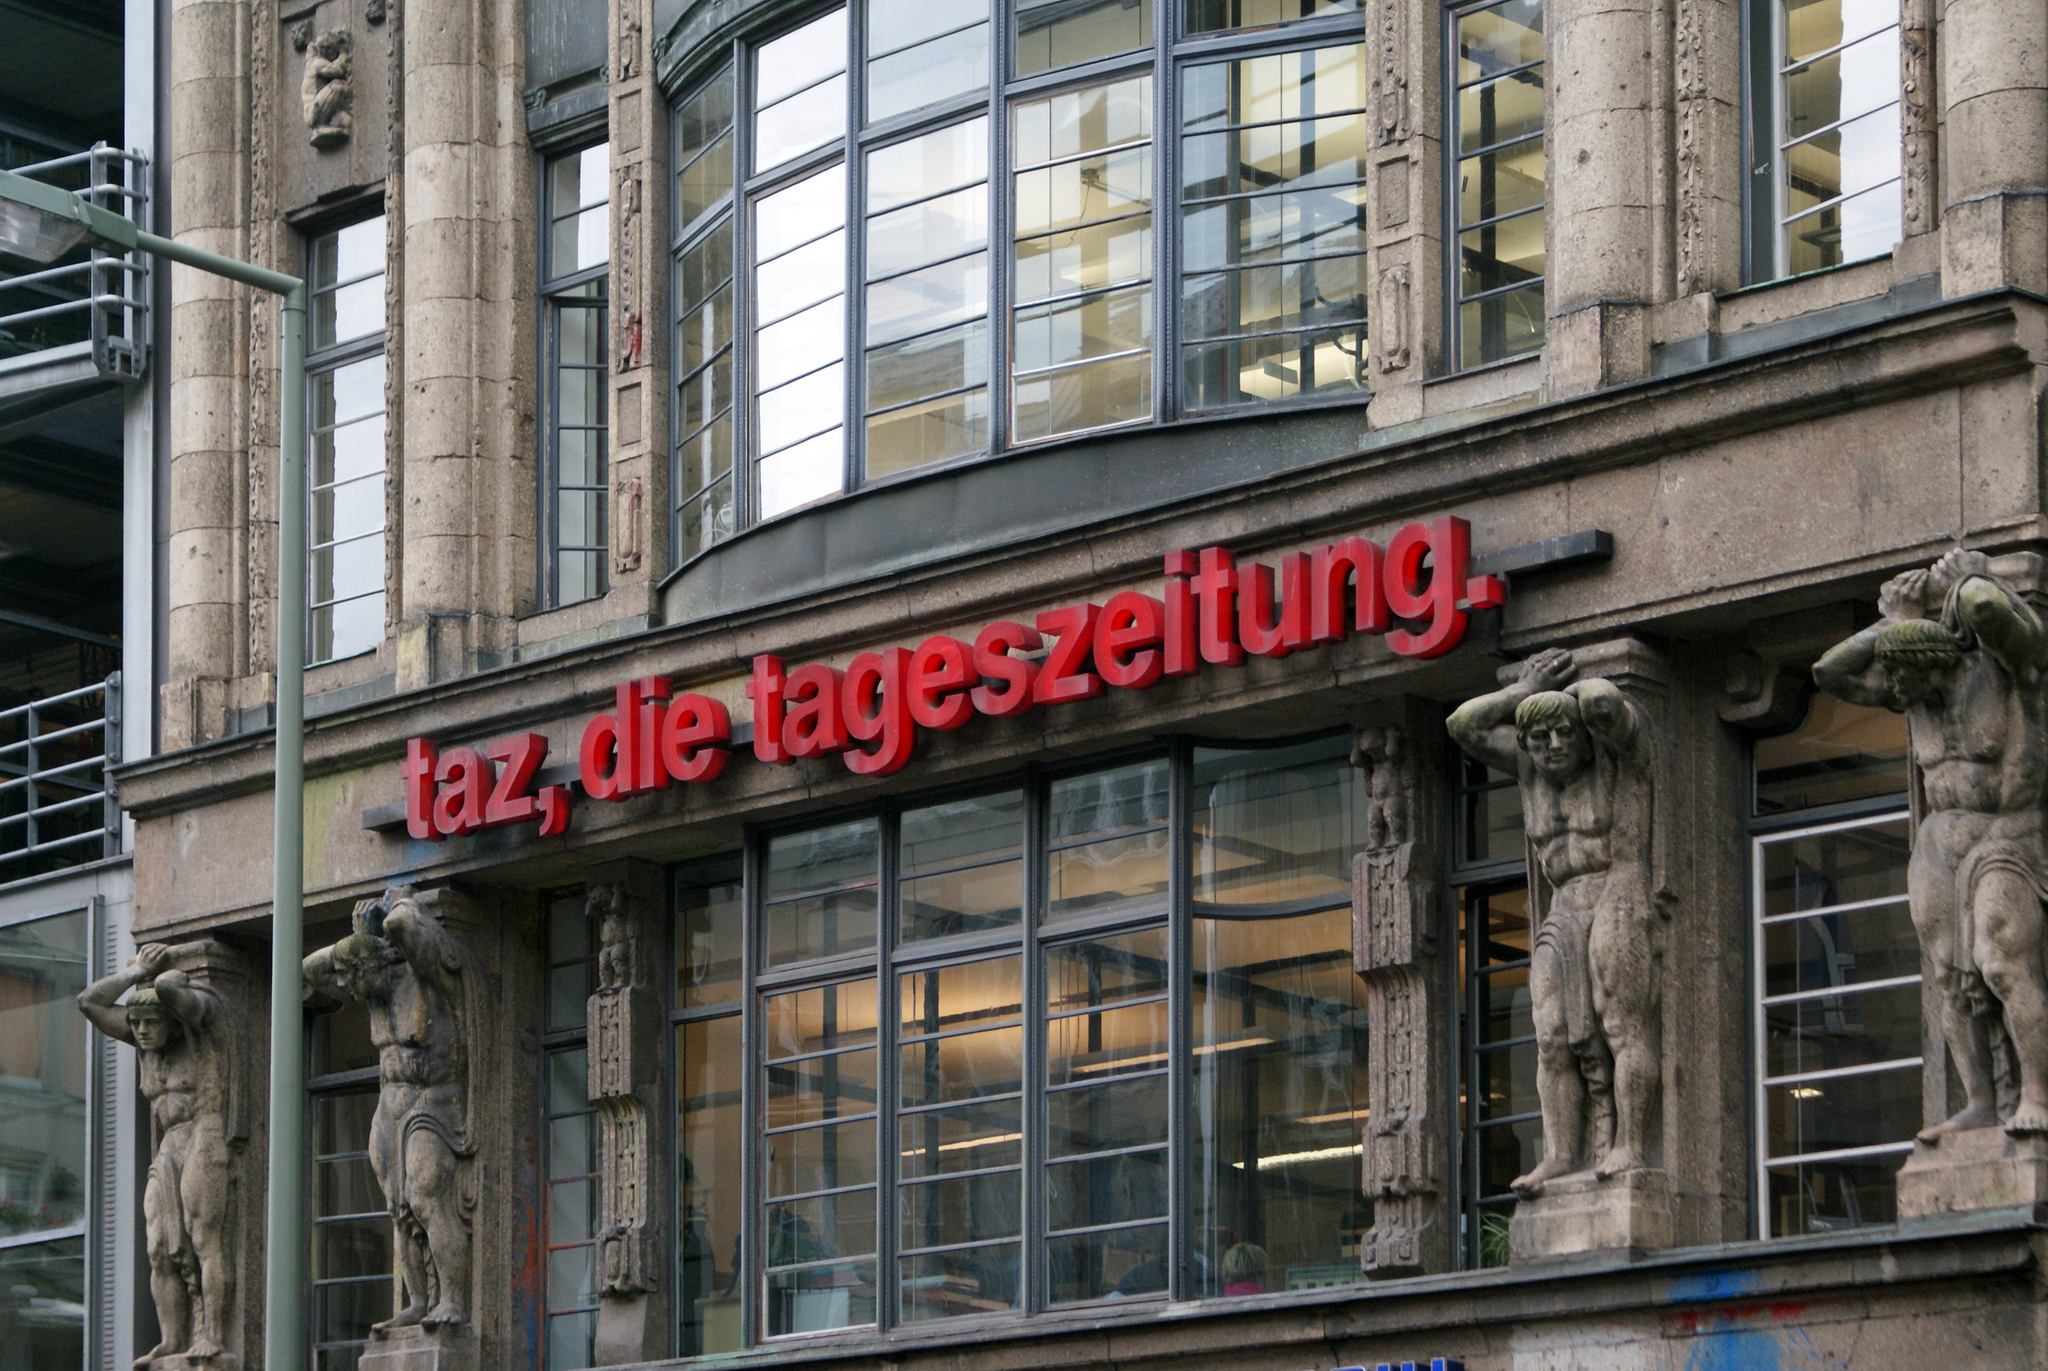 De voorgevel van het gebouw aan de Rudi Dutschke Strasse in Berlijn, waar die Tageszeitung is gevestigd. Foto: Marc Wathieu.